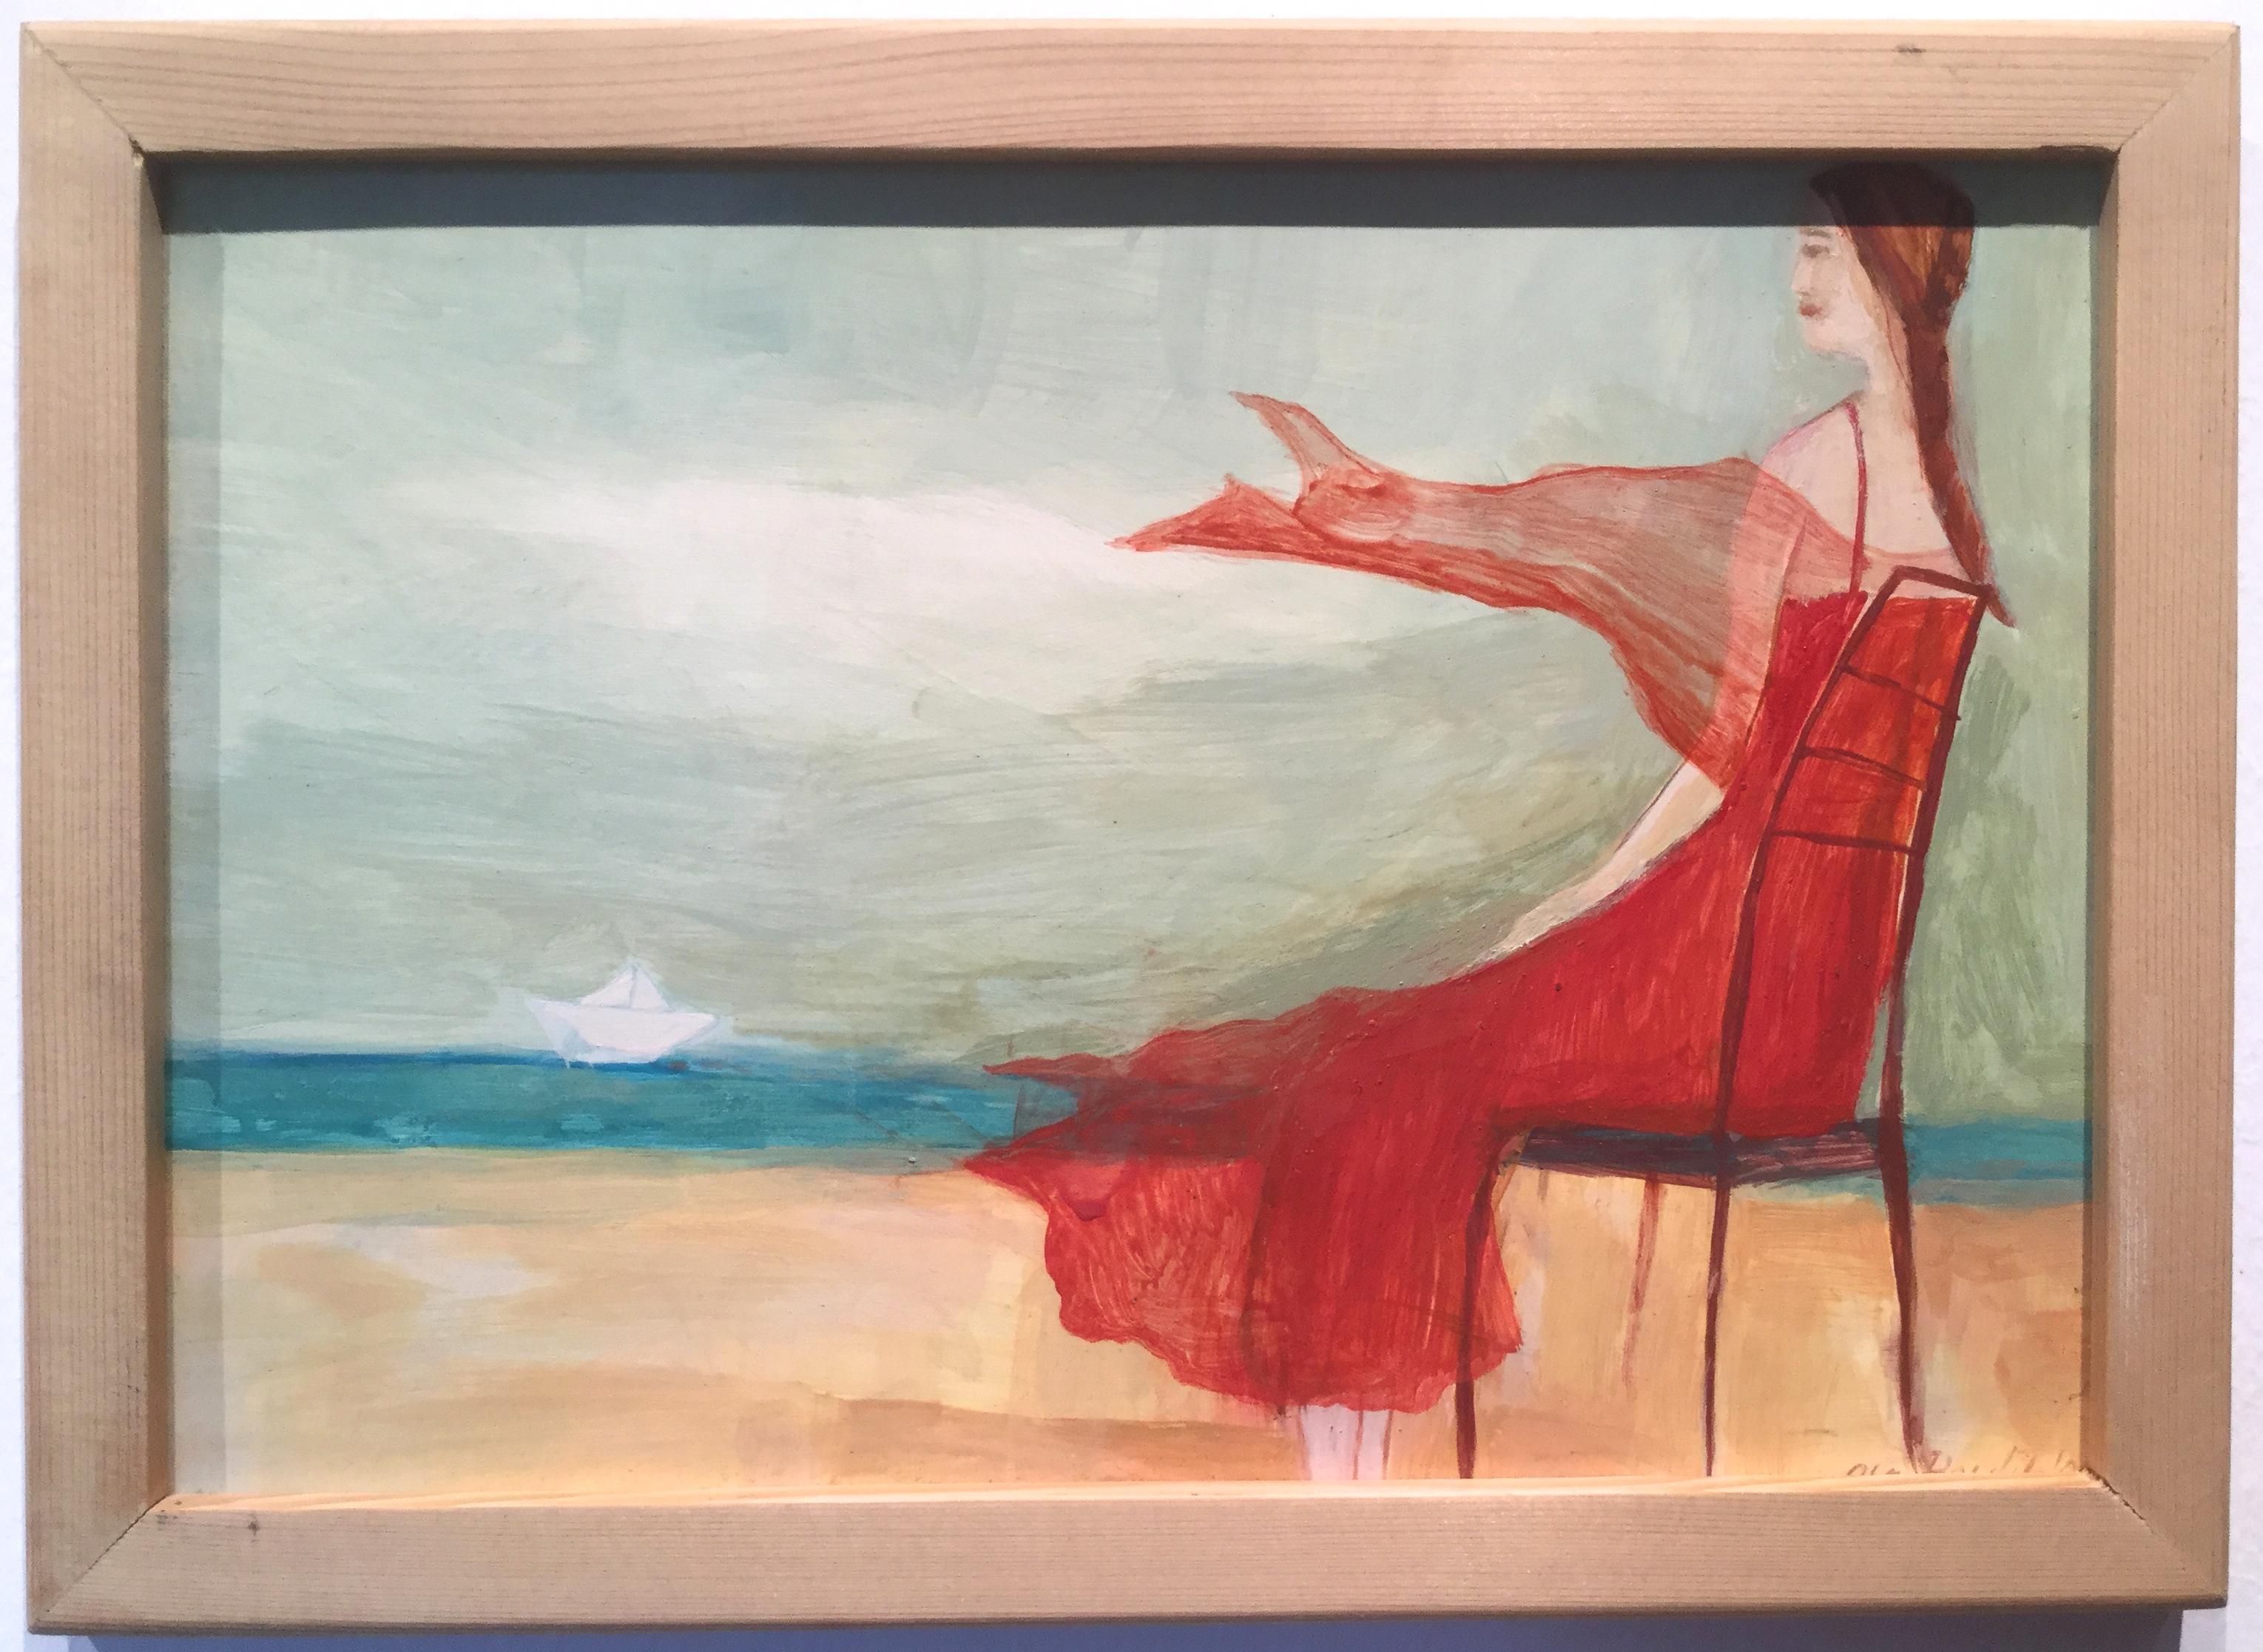 Aleksandra Pawlikowska Figurative Painting – Mädchen in rotem Kleid mit Blicken auf das Meer - Anmutiges illustriertes, romantisches Gemälde